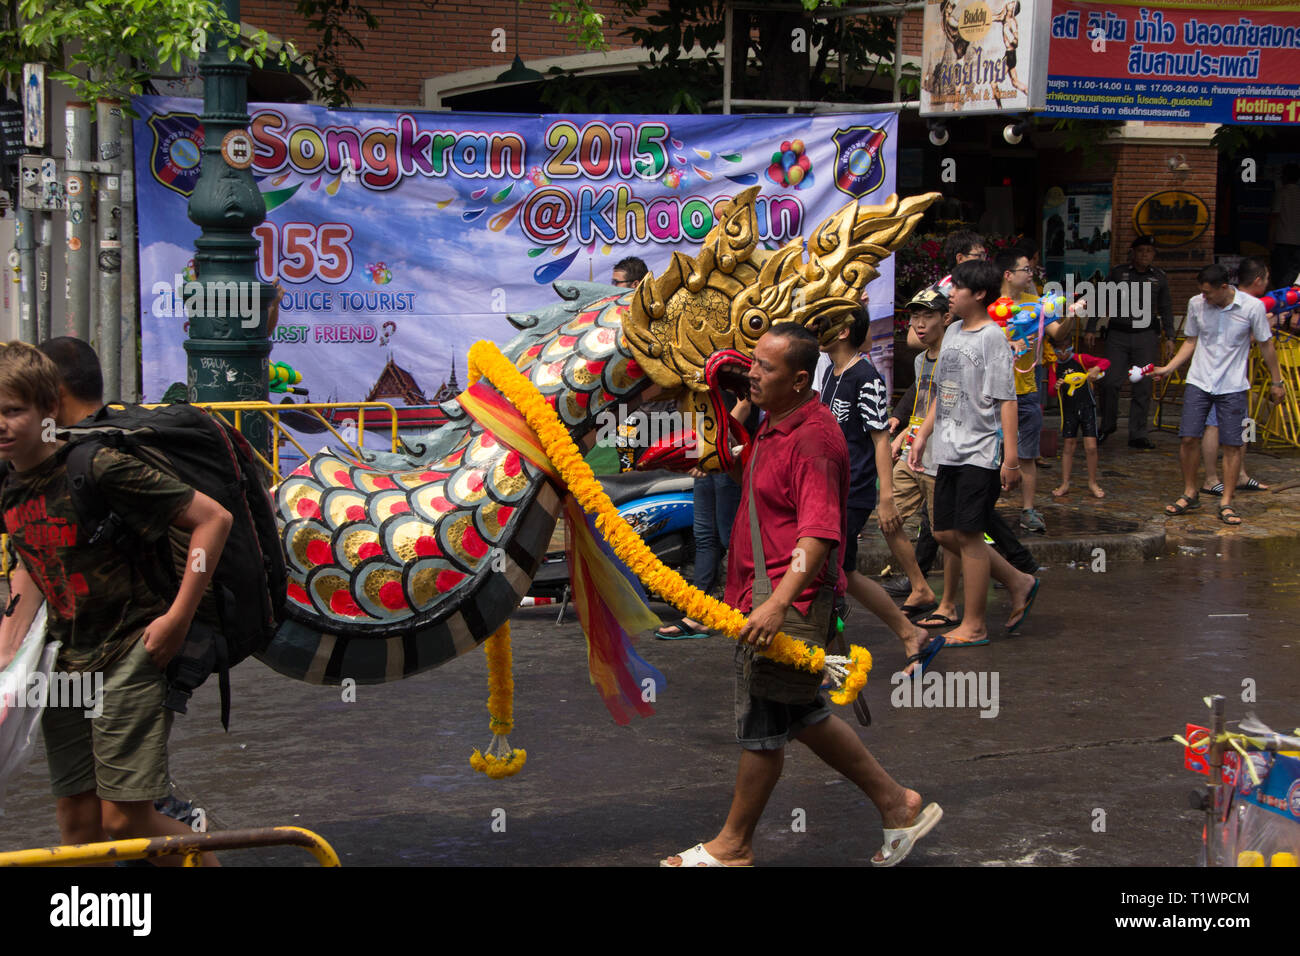 Personnes titulaires d'un dragon pour célébrer le nouvel an Thaï de Songkran à Khaosan Road, Bangkok Thaïlande Banque D'Images